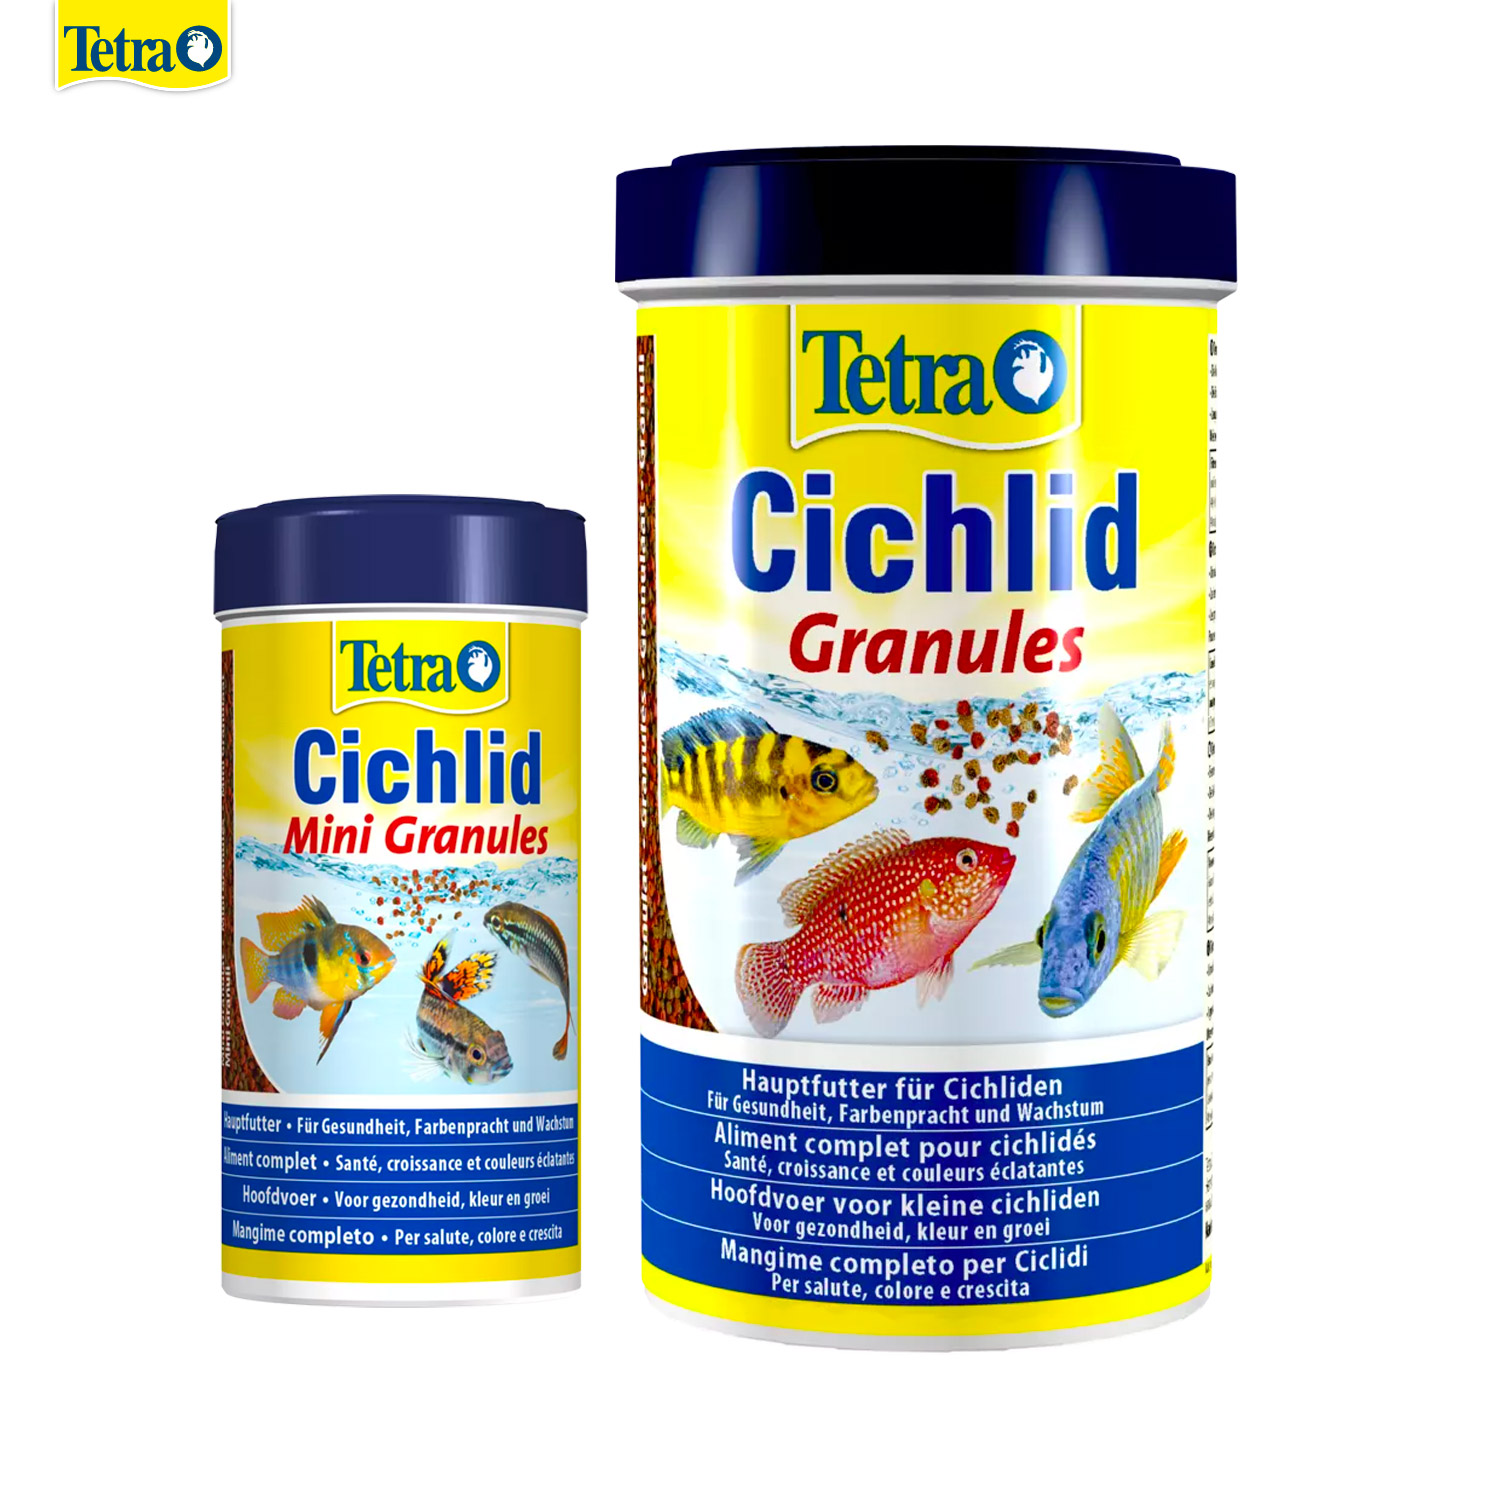 Tetra Cichlid Mini Granules อาหารปลาหมอสีมาลาวี เม็ดเล็ก เหมาะสำหรับปลาหมอทุกขนาด สารอาหารครบ เร่งสี เร่งโต